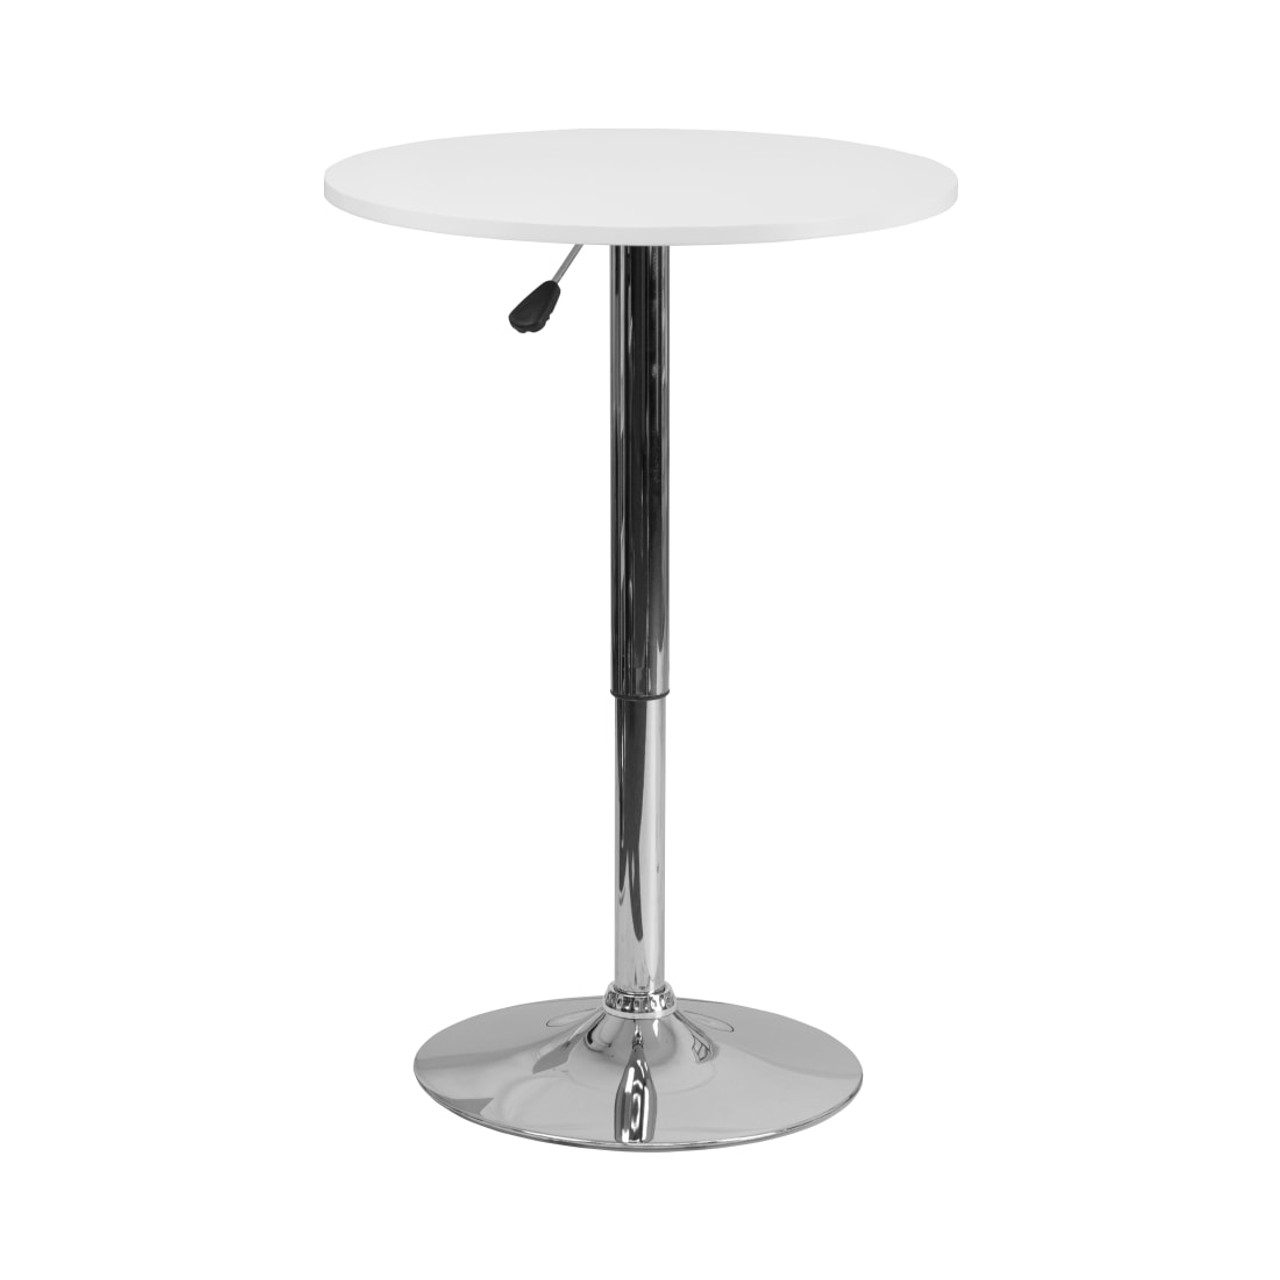 23.75” Round Adjustable Height White Wood Table (Adjustable Range 26.25” - 35.75”)